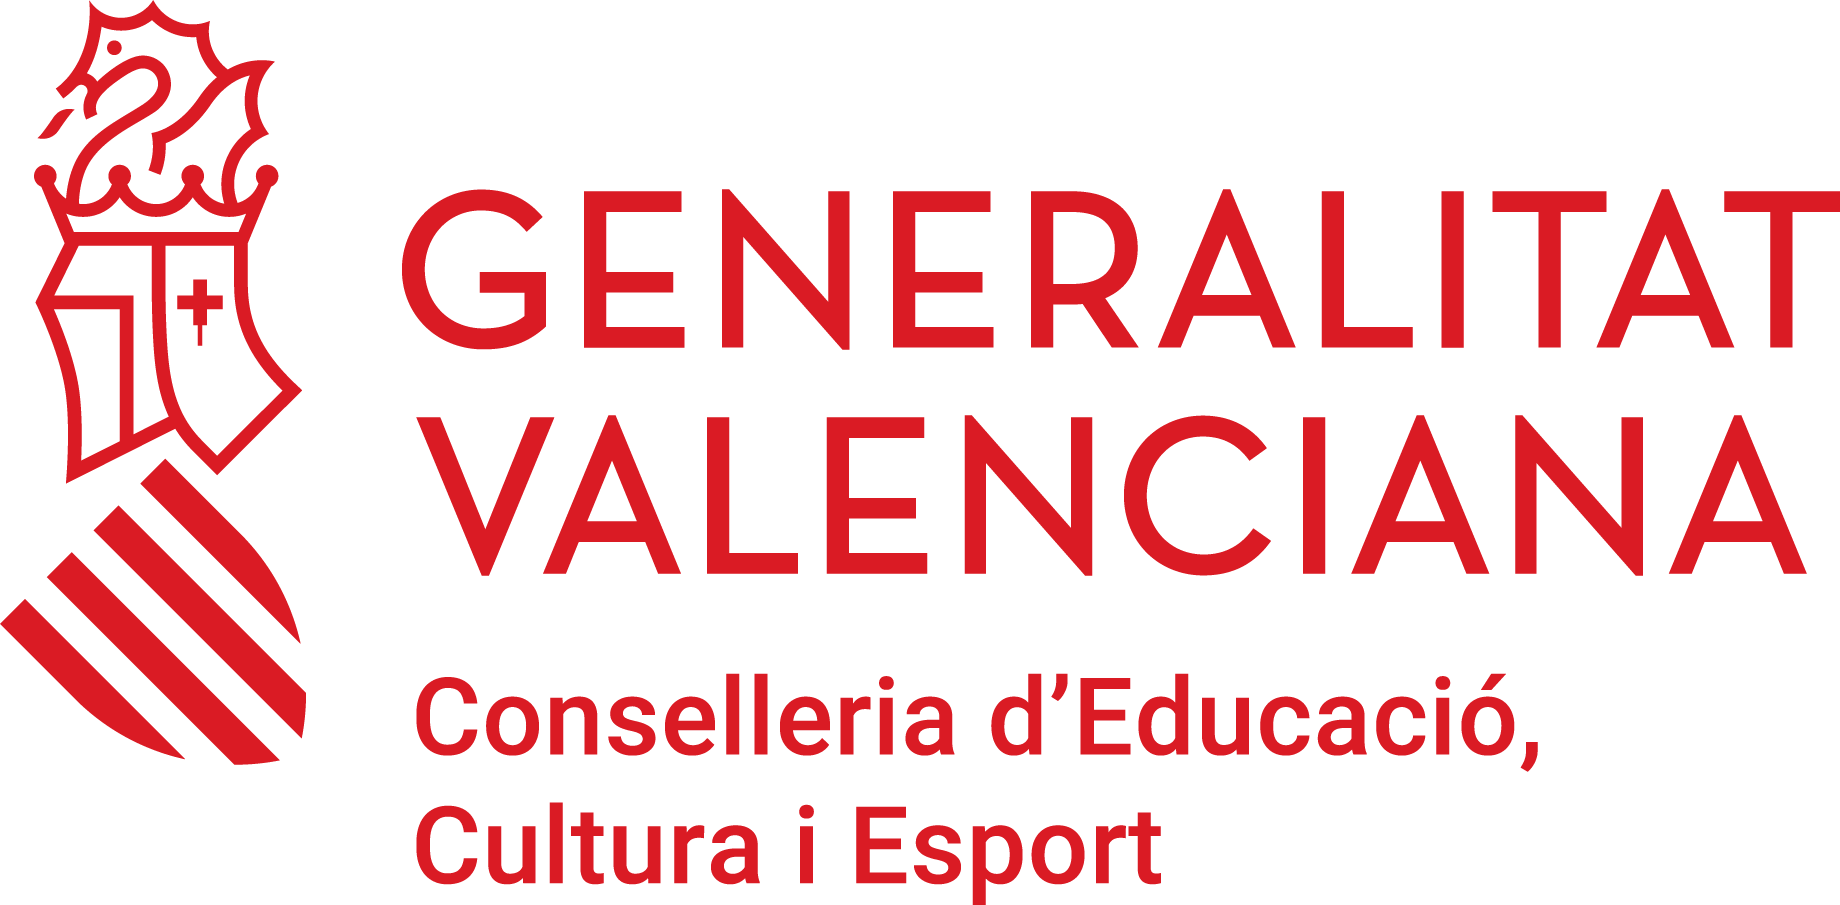 Generalitat Valenciana, Conselleria d'Educació, Cultura i Esport